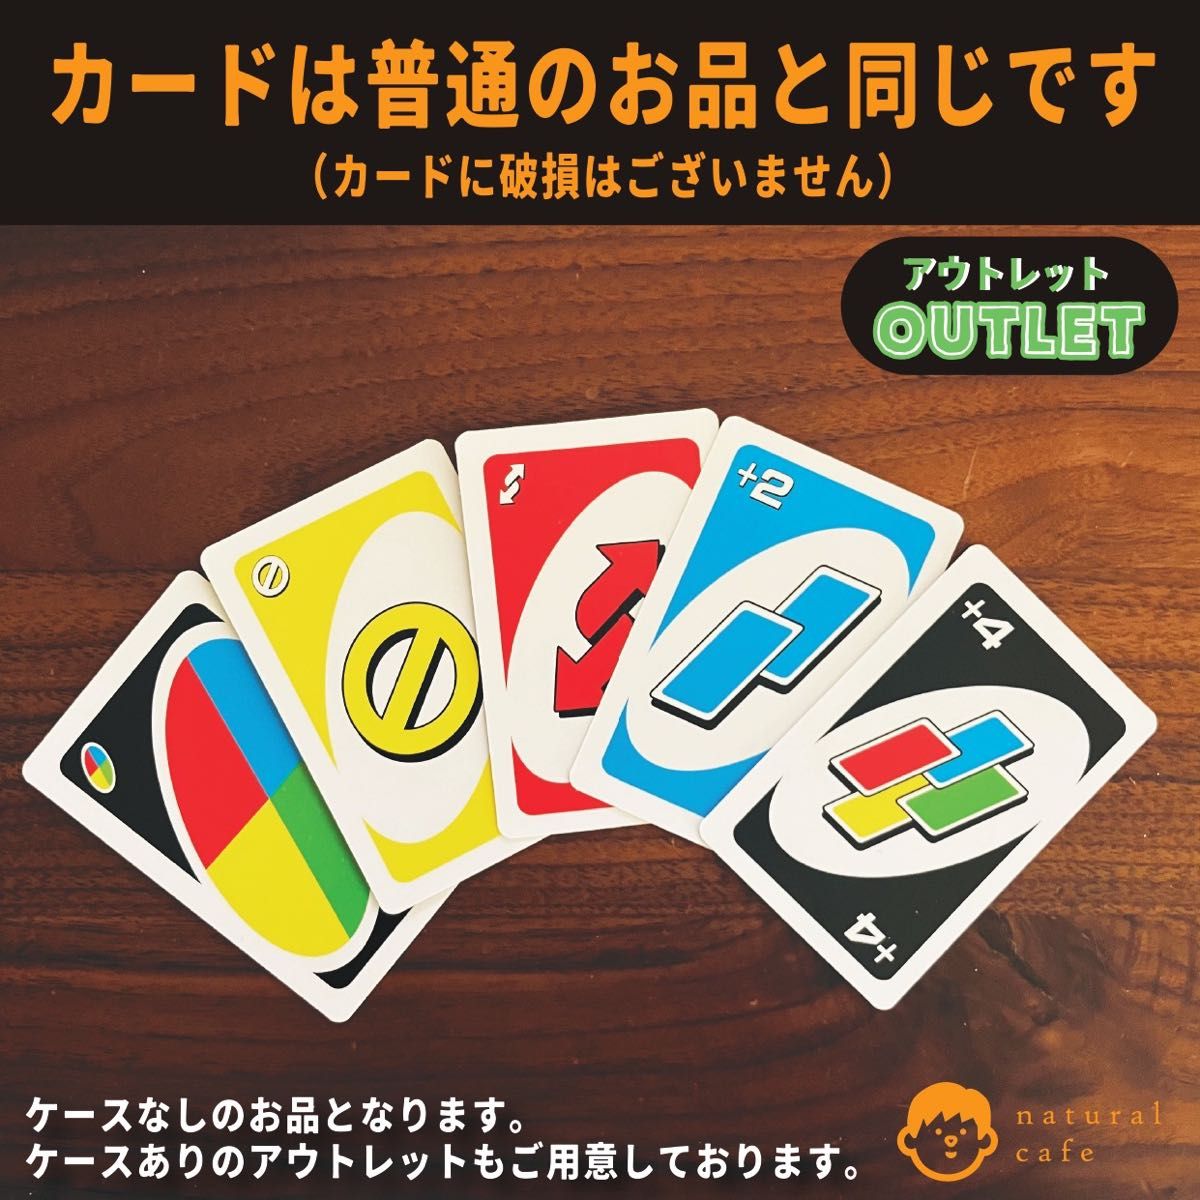 【新品】UNO（ウノ）　カードゲーム（アウトレット）カードのみ